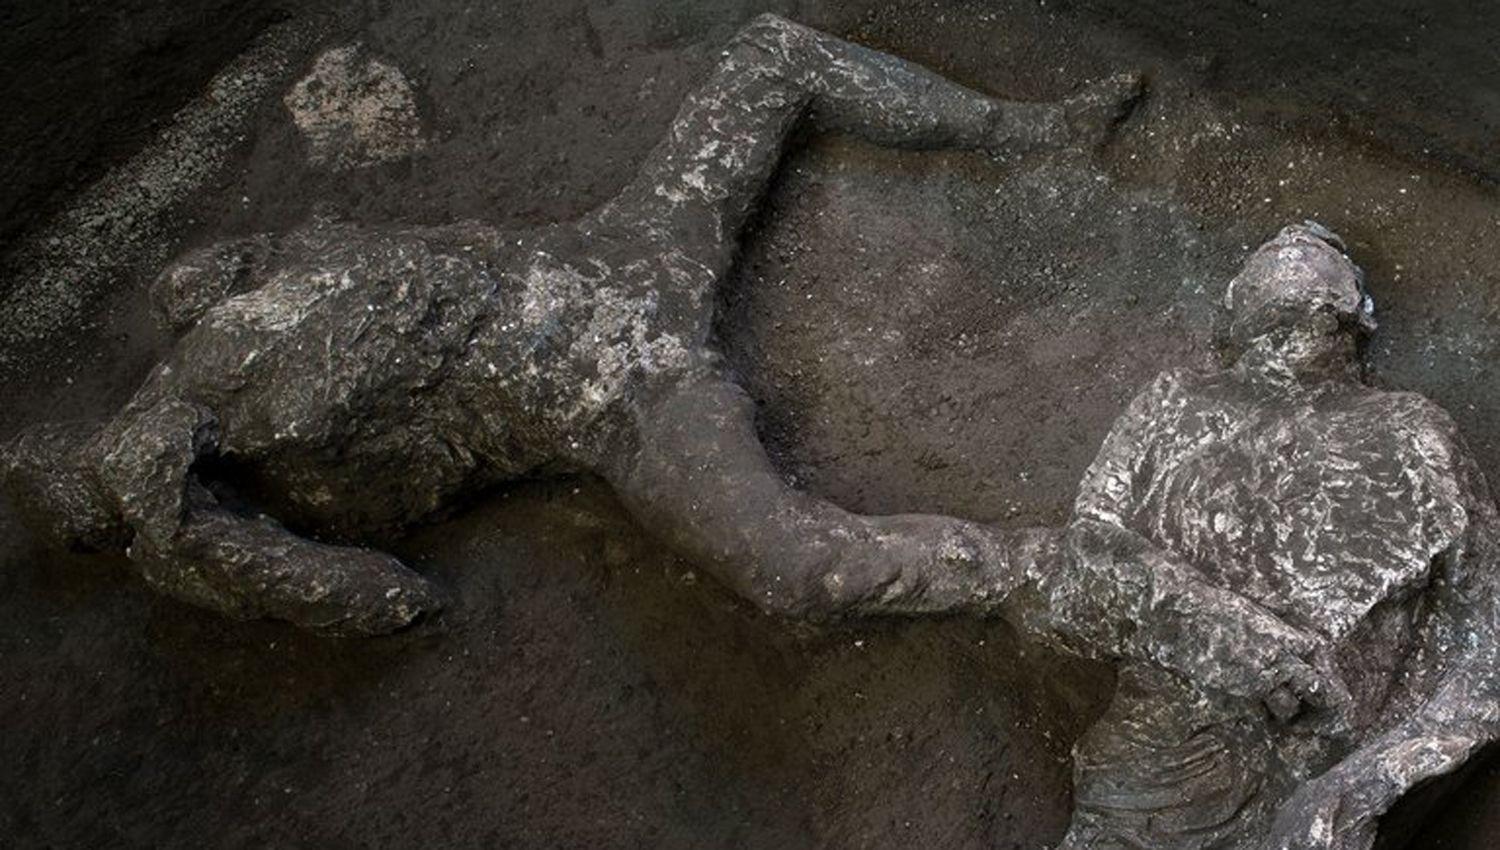 Descubren los restos intactos de dos hombres que murieron por la erupcioacuten del Vesubio hace 2000 antildeos